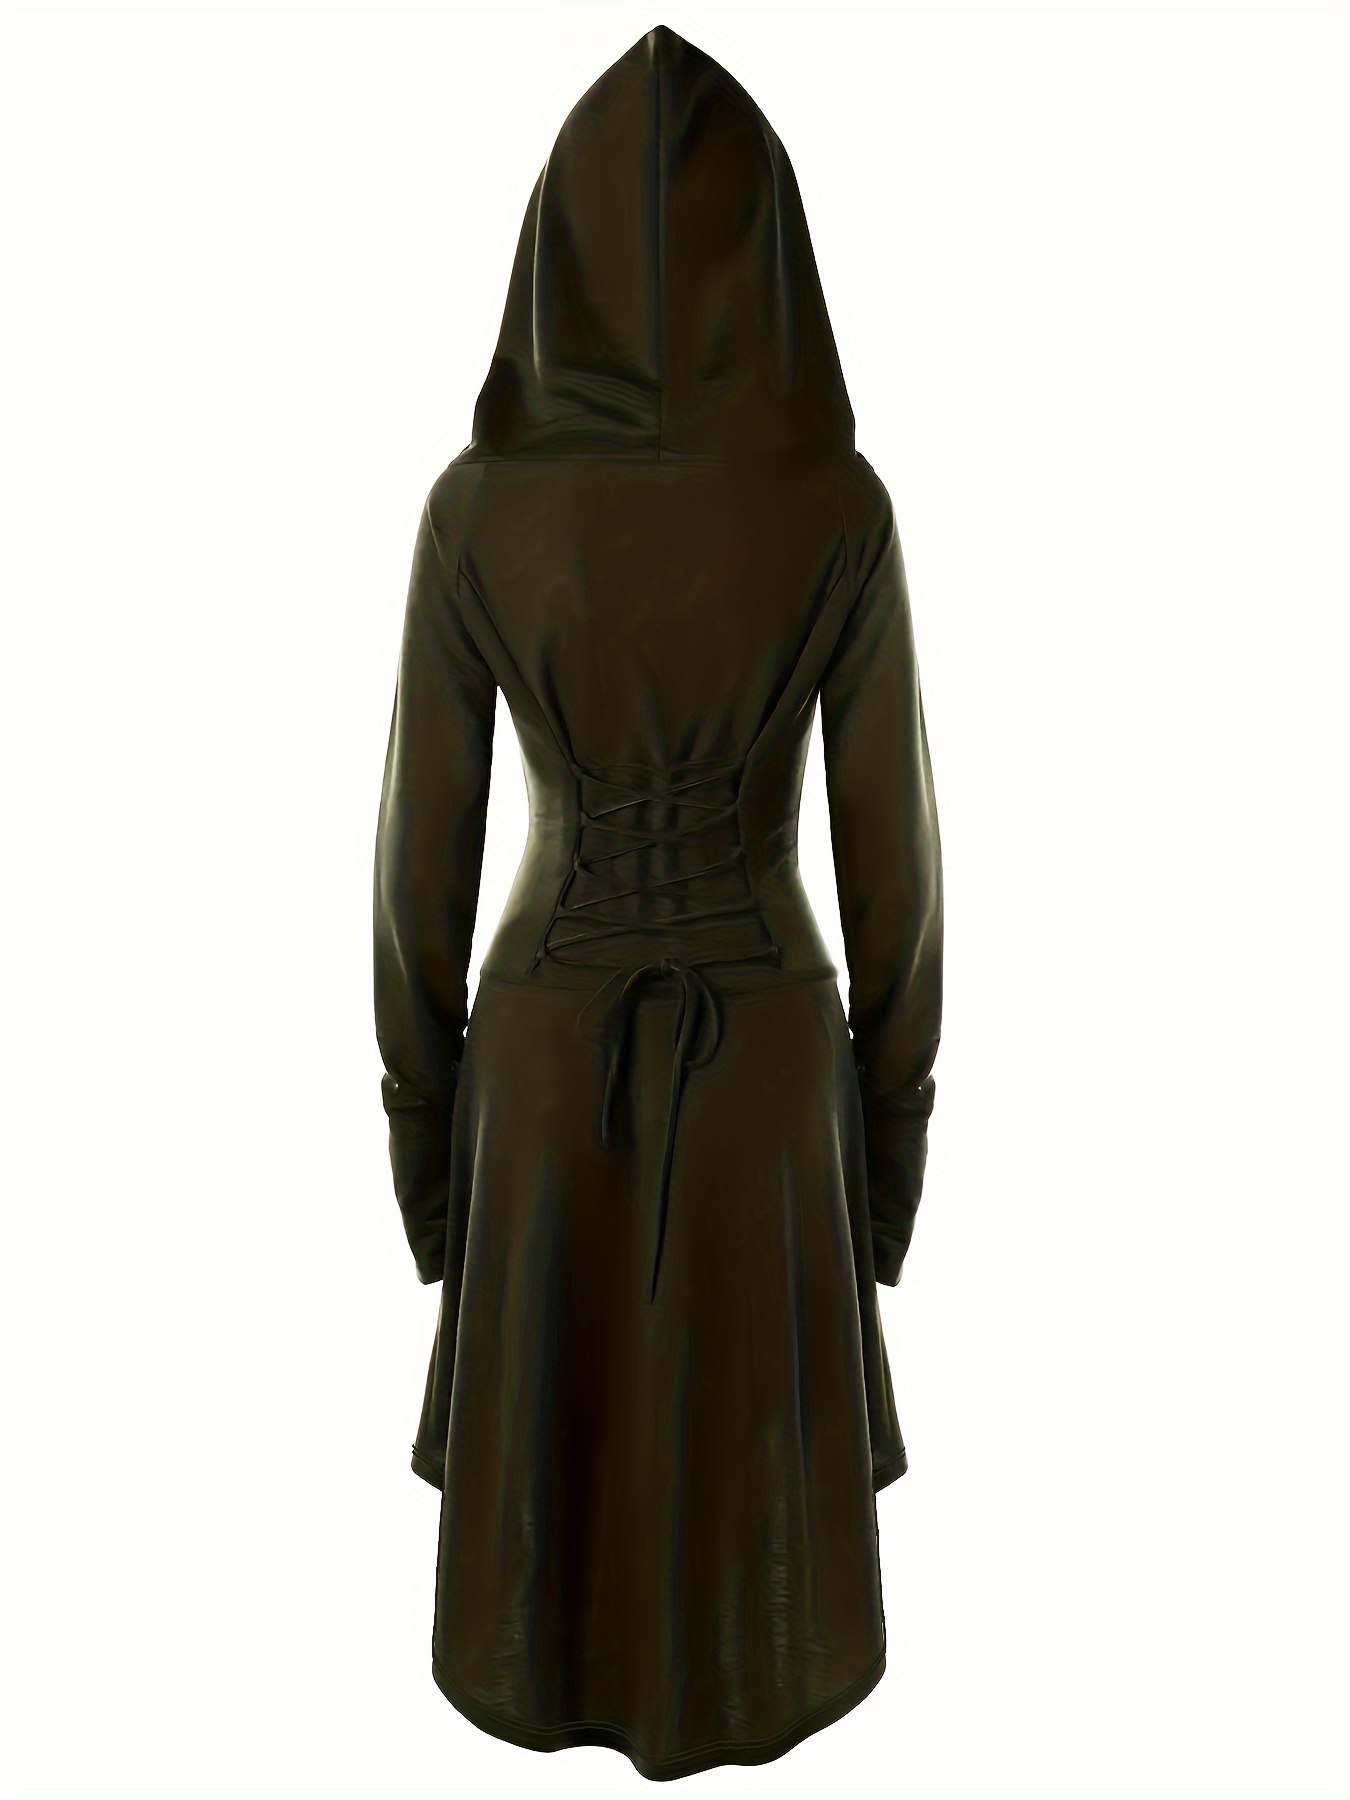 plus Size Gothic Clothes for Women 4x Women Plus Size Long Dress